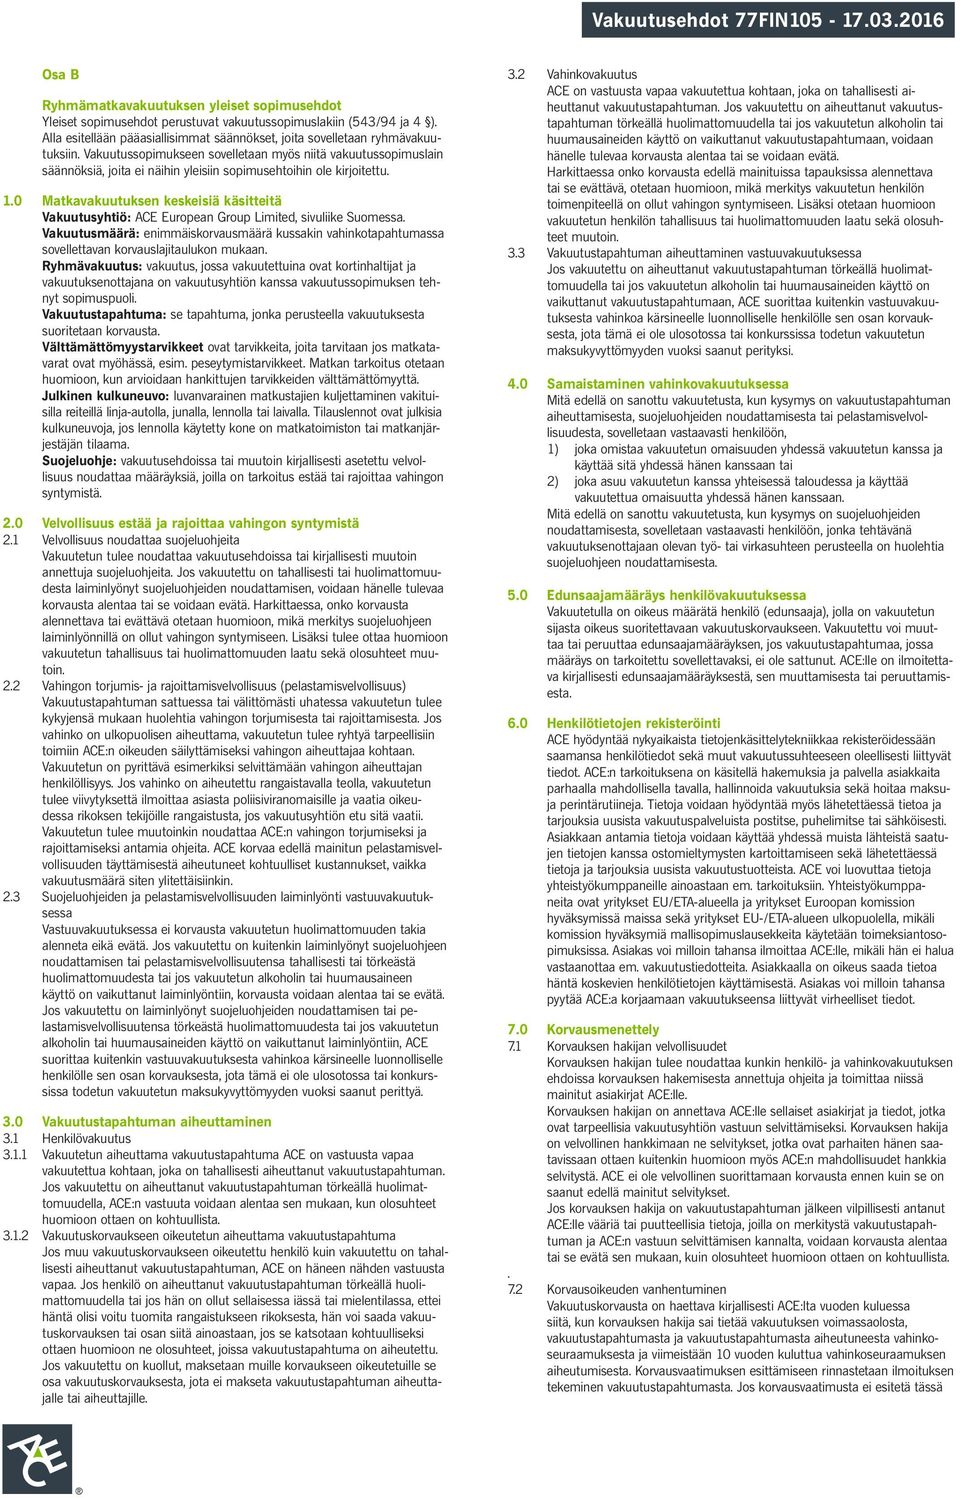 0 Matkavakuutuksen keskeisiä käsitteitä Vakuutusyhtiö: ACE European Group Limited, sivuliike Suomessa.